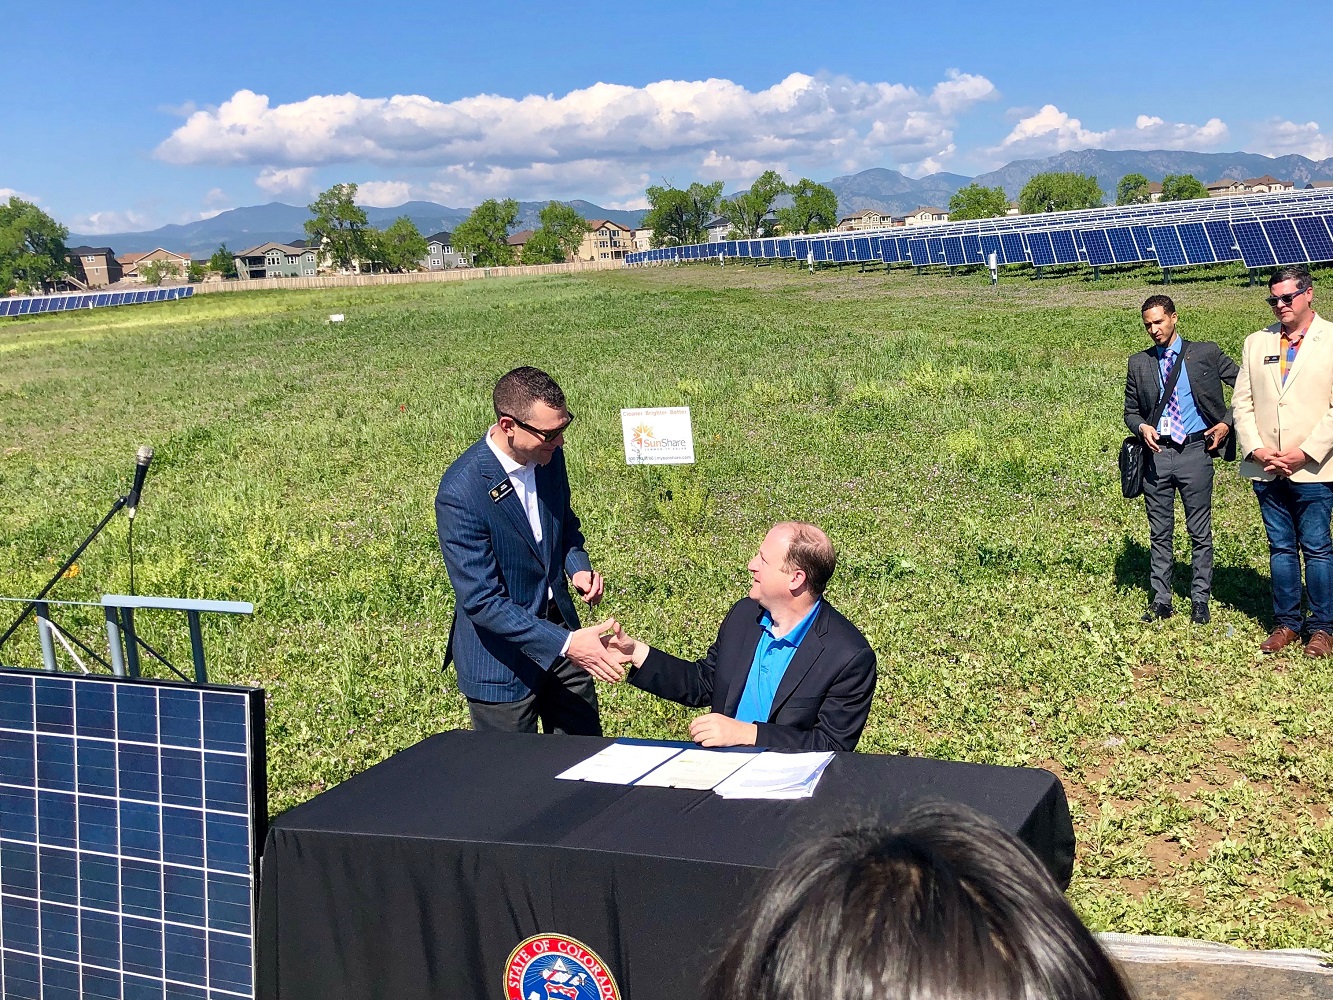 Two men shaking hands in solar panel field